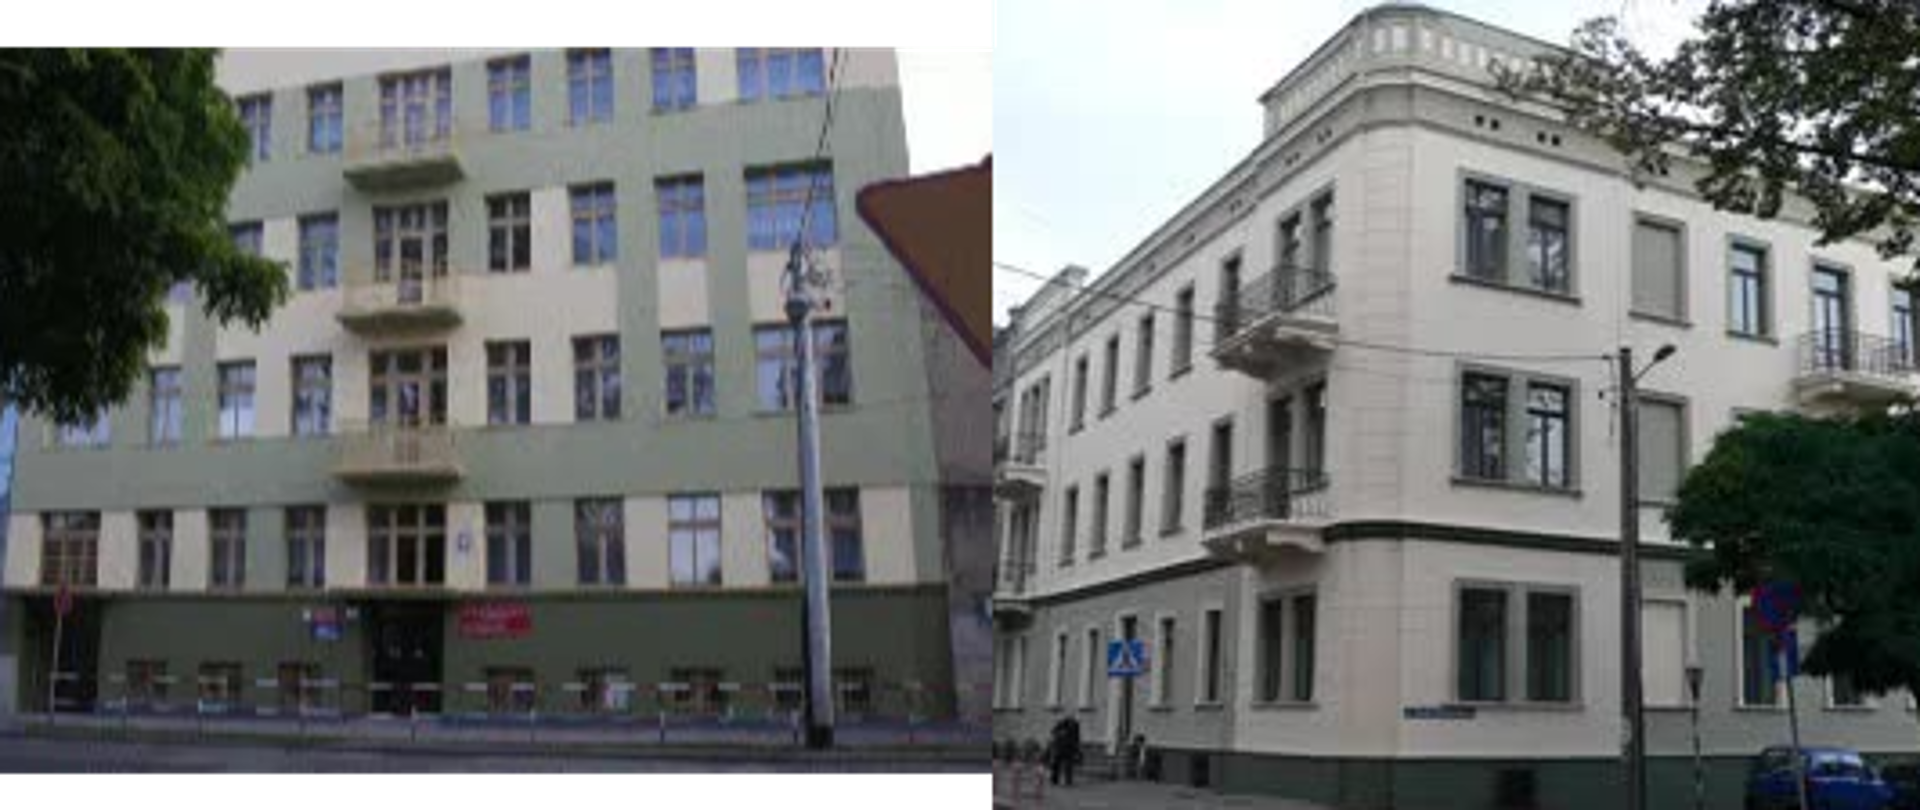 Z lewej strony zdjęcie fasady budynku szkolnego przy Jasnogórskiej 17. Z lewej strony drzewo z sąsiedniej posesji.
Z prawej strony zdjęcie narożnika budynku szkolnego przy Jasnogórskiej 30. Z prawej strony drzewo z sąsiedniej posesji.